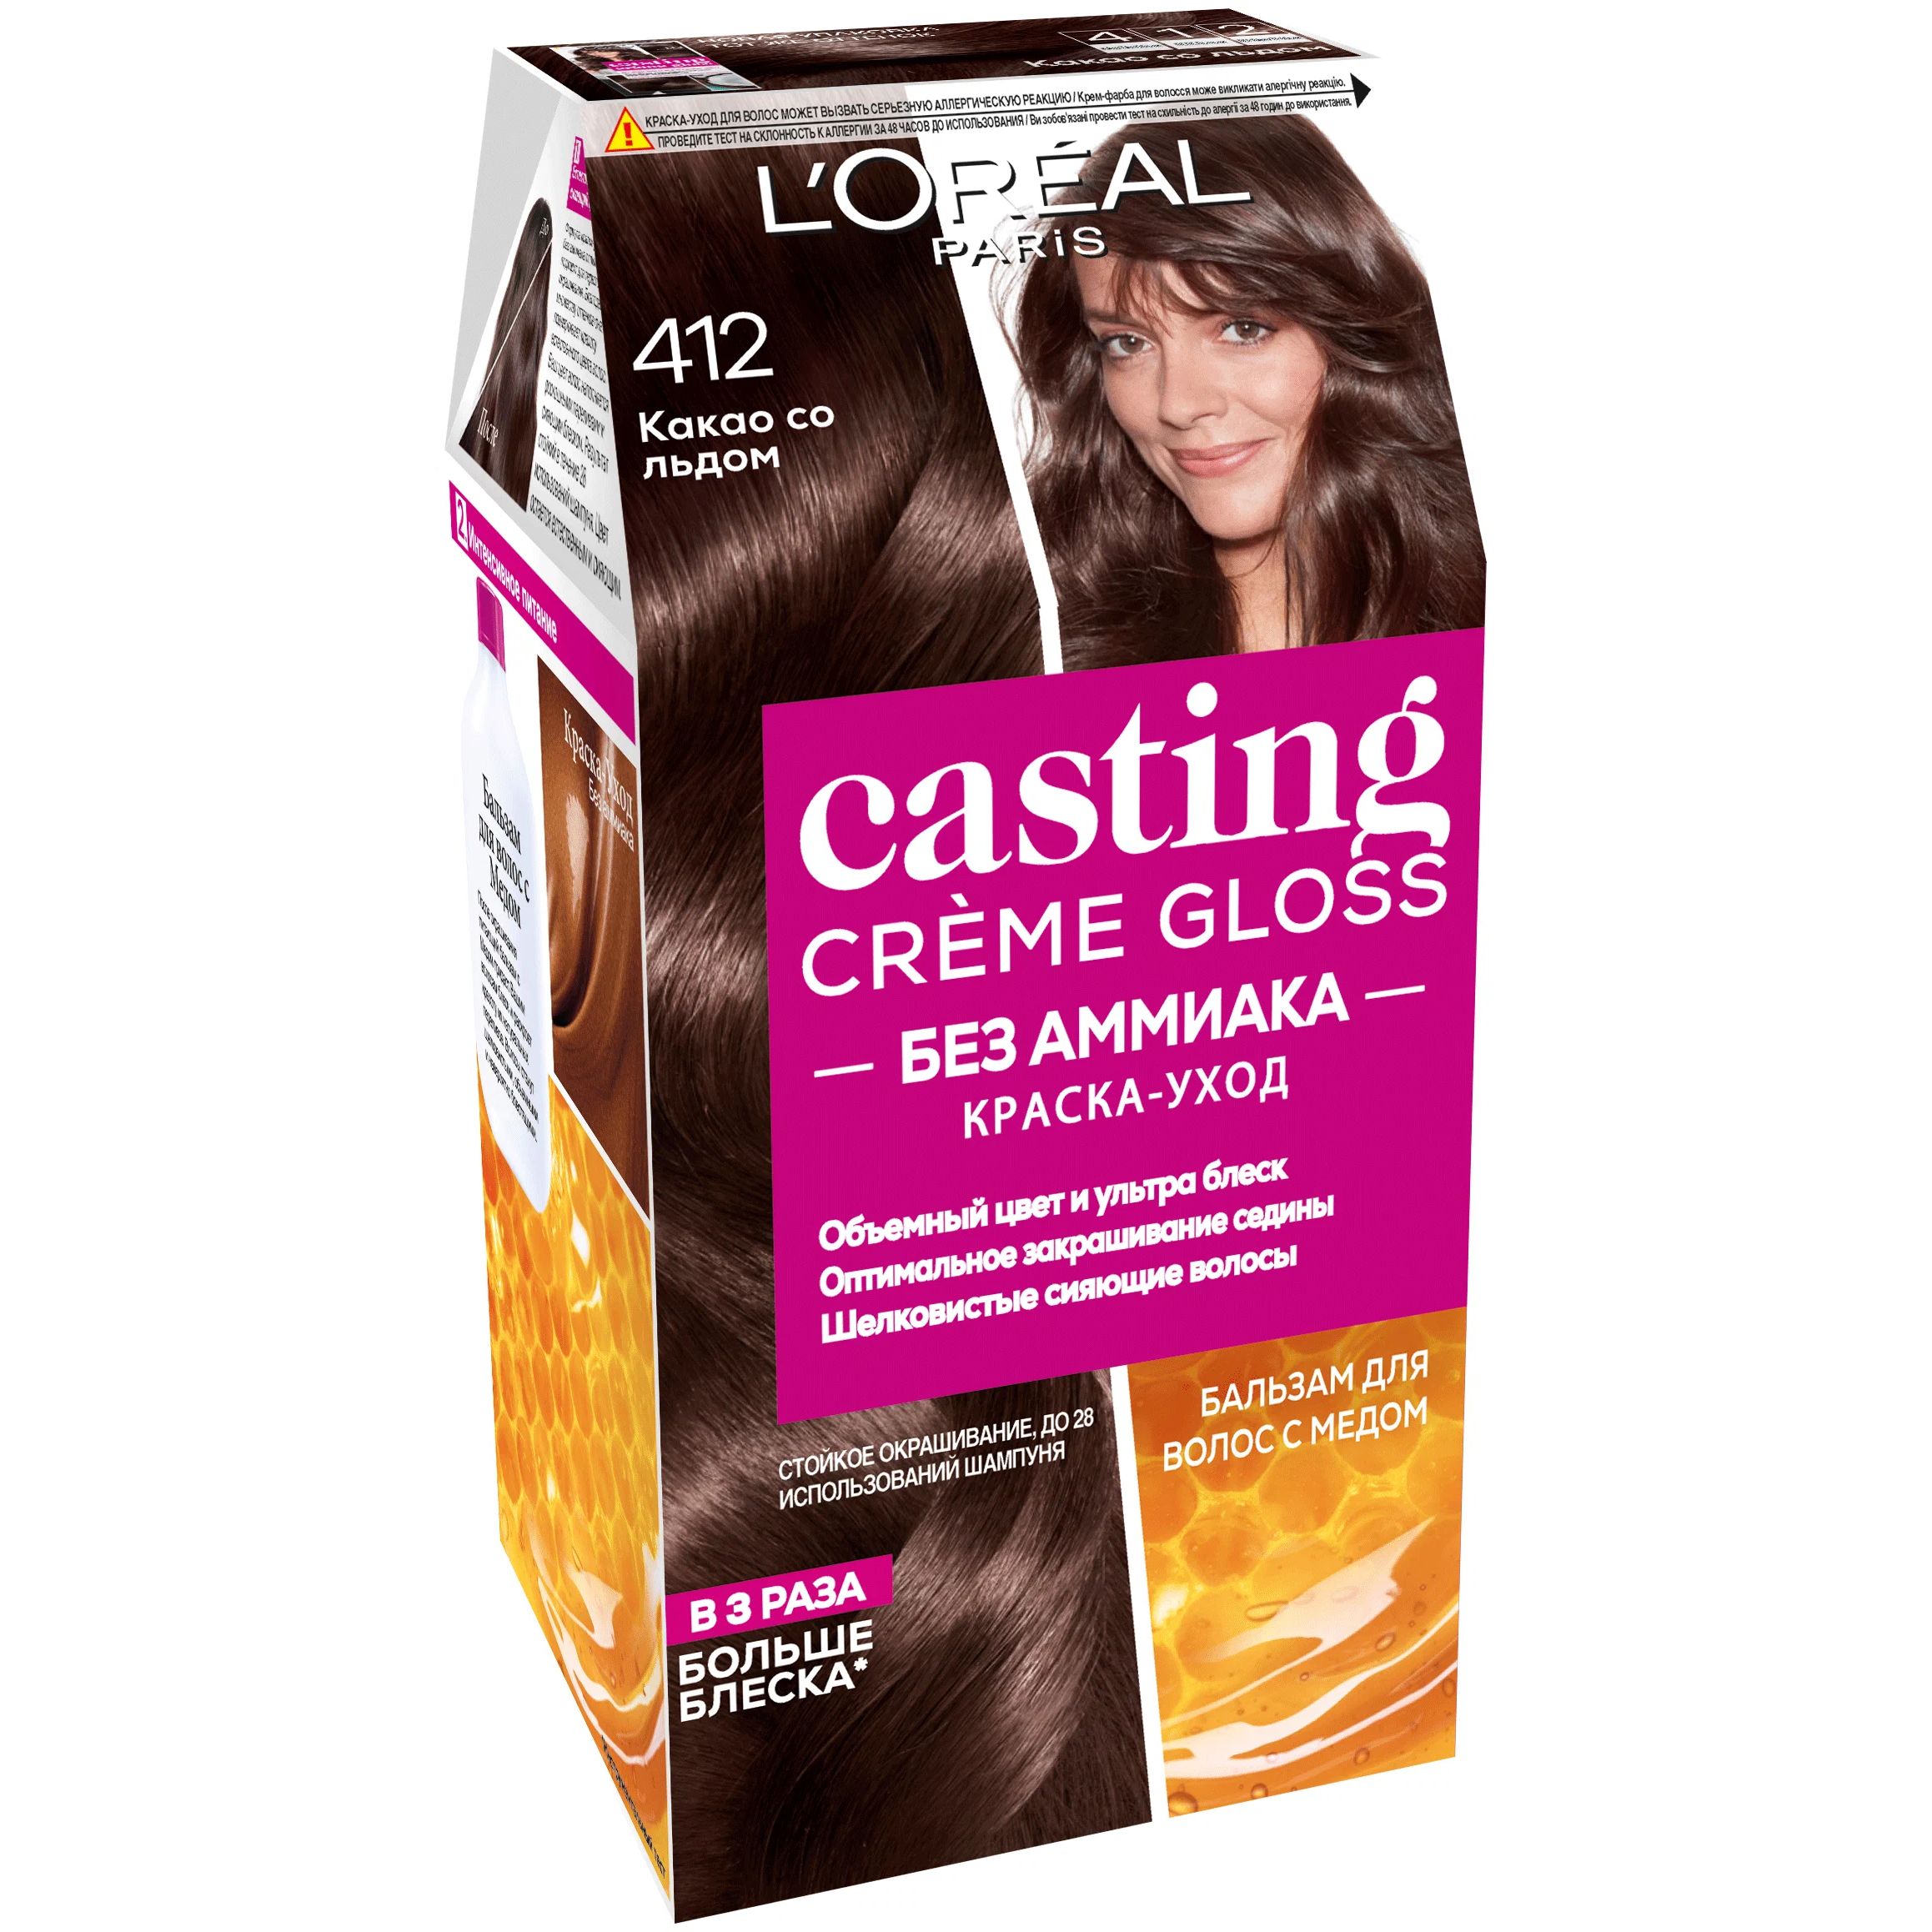 Краска-уход для волос L'Oreal Paris Casting Creme Gloss, 412 какао со льдом, , 180 мл бальзам для волос l oreal paris elseve полное восстановление 5 400 мл